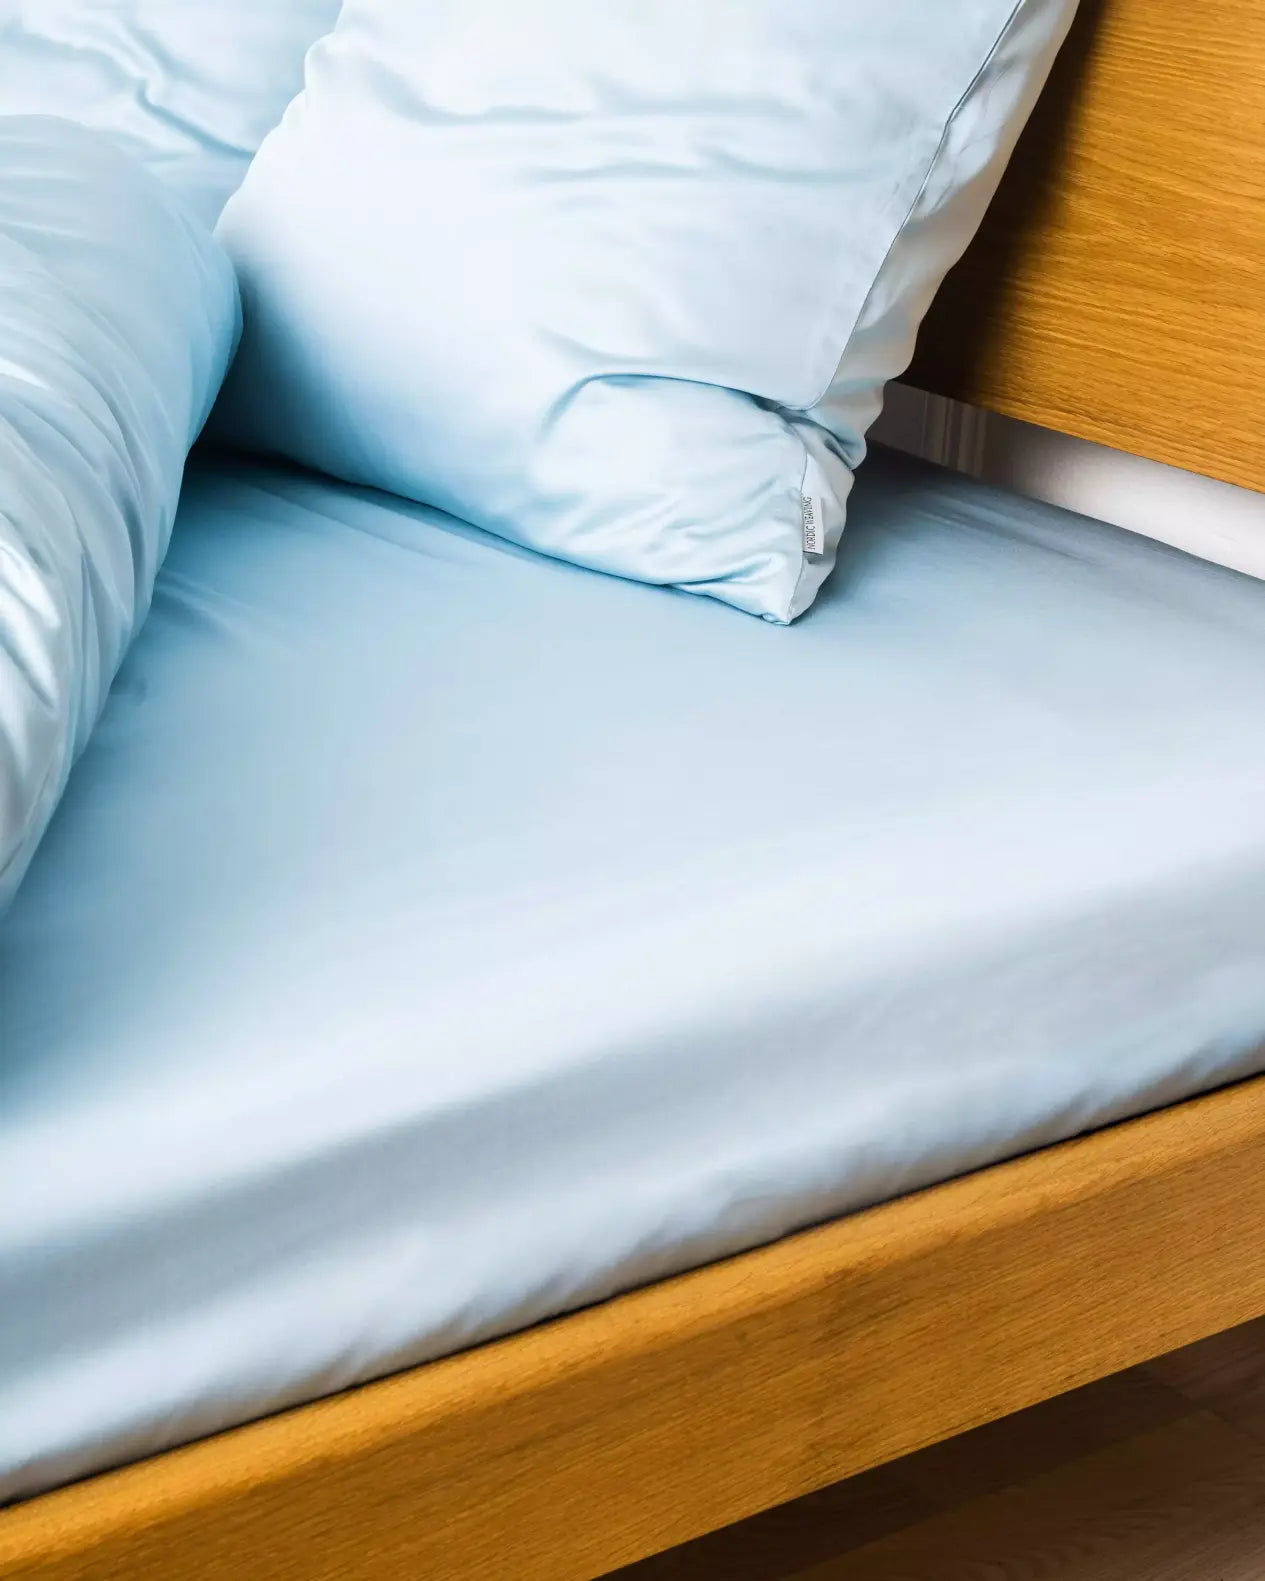 Miljøbillede af seng redt med bambus kuvertlagen i farven lys blå i størrelsen 180x200x20cm